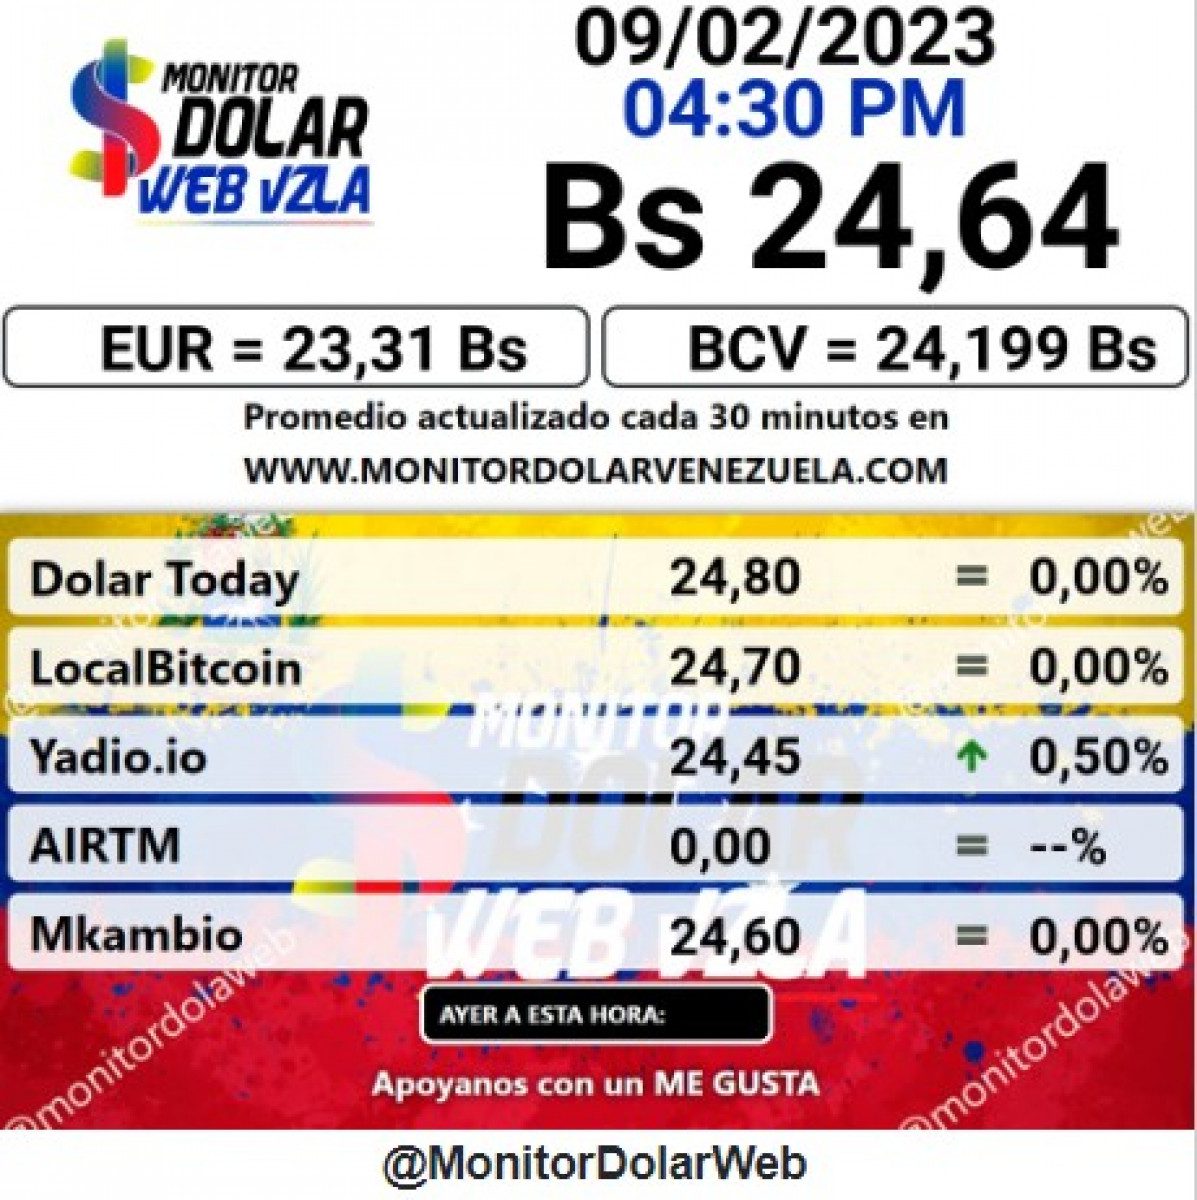 dolartoday en venezuela precio del dolar jueves 9 de febrero de 2023 laverdaddemonagas.com monitor2222